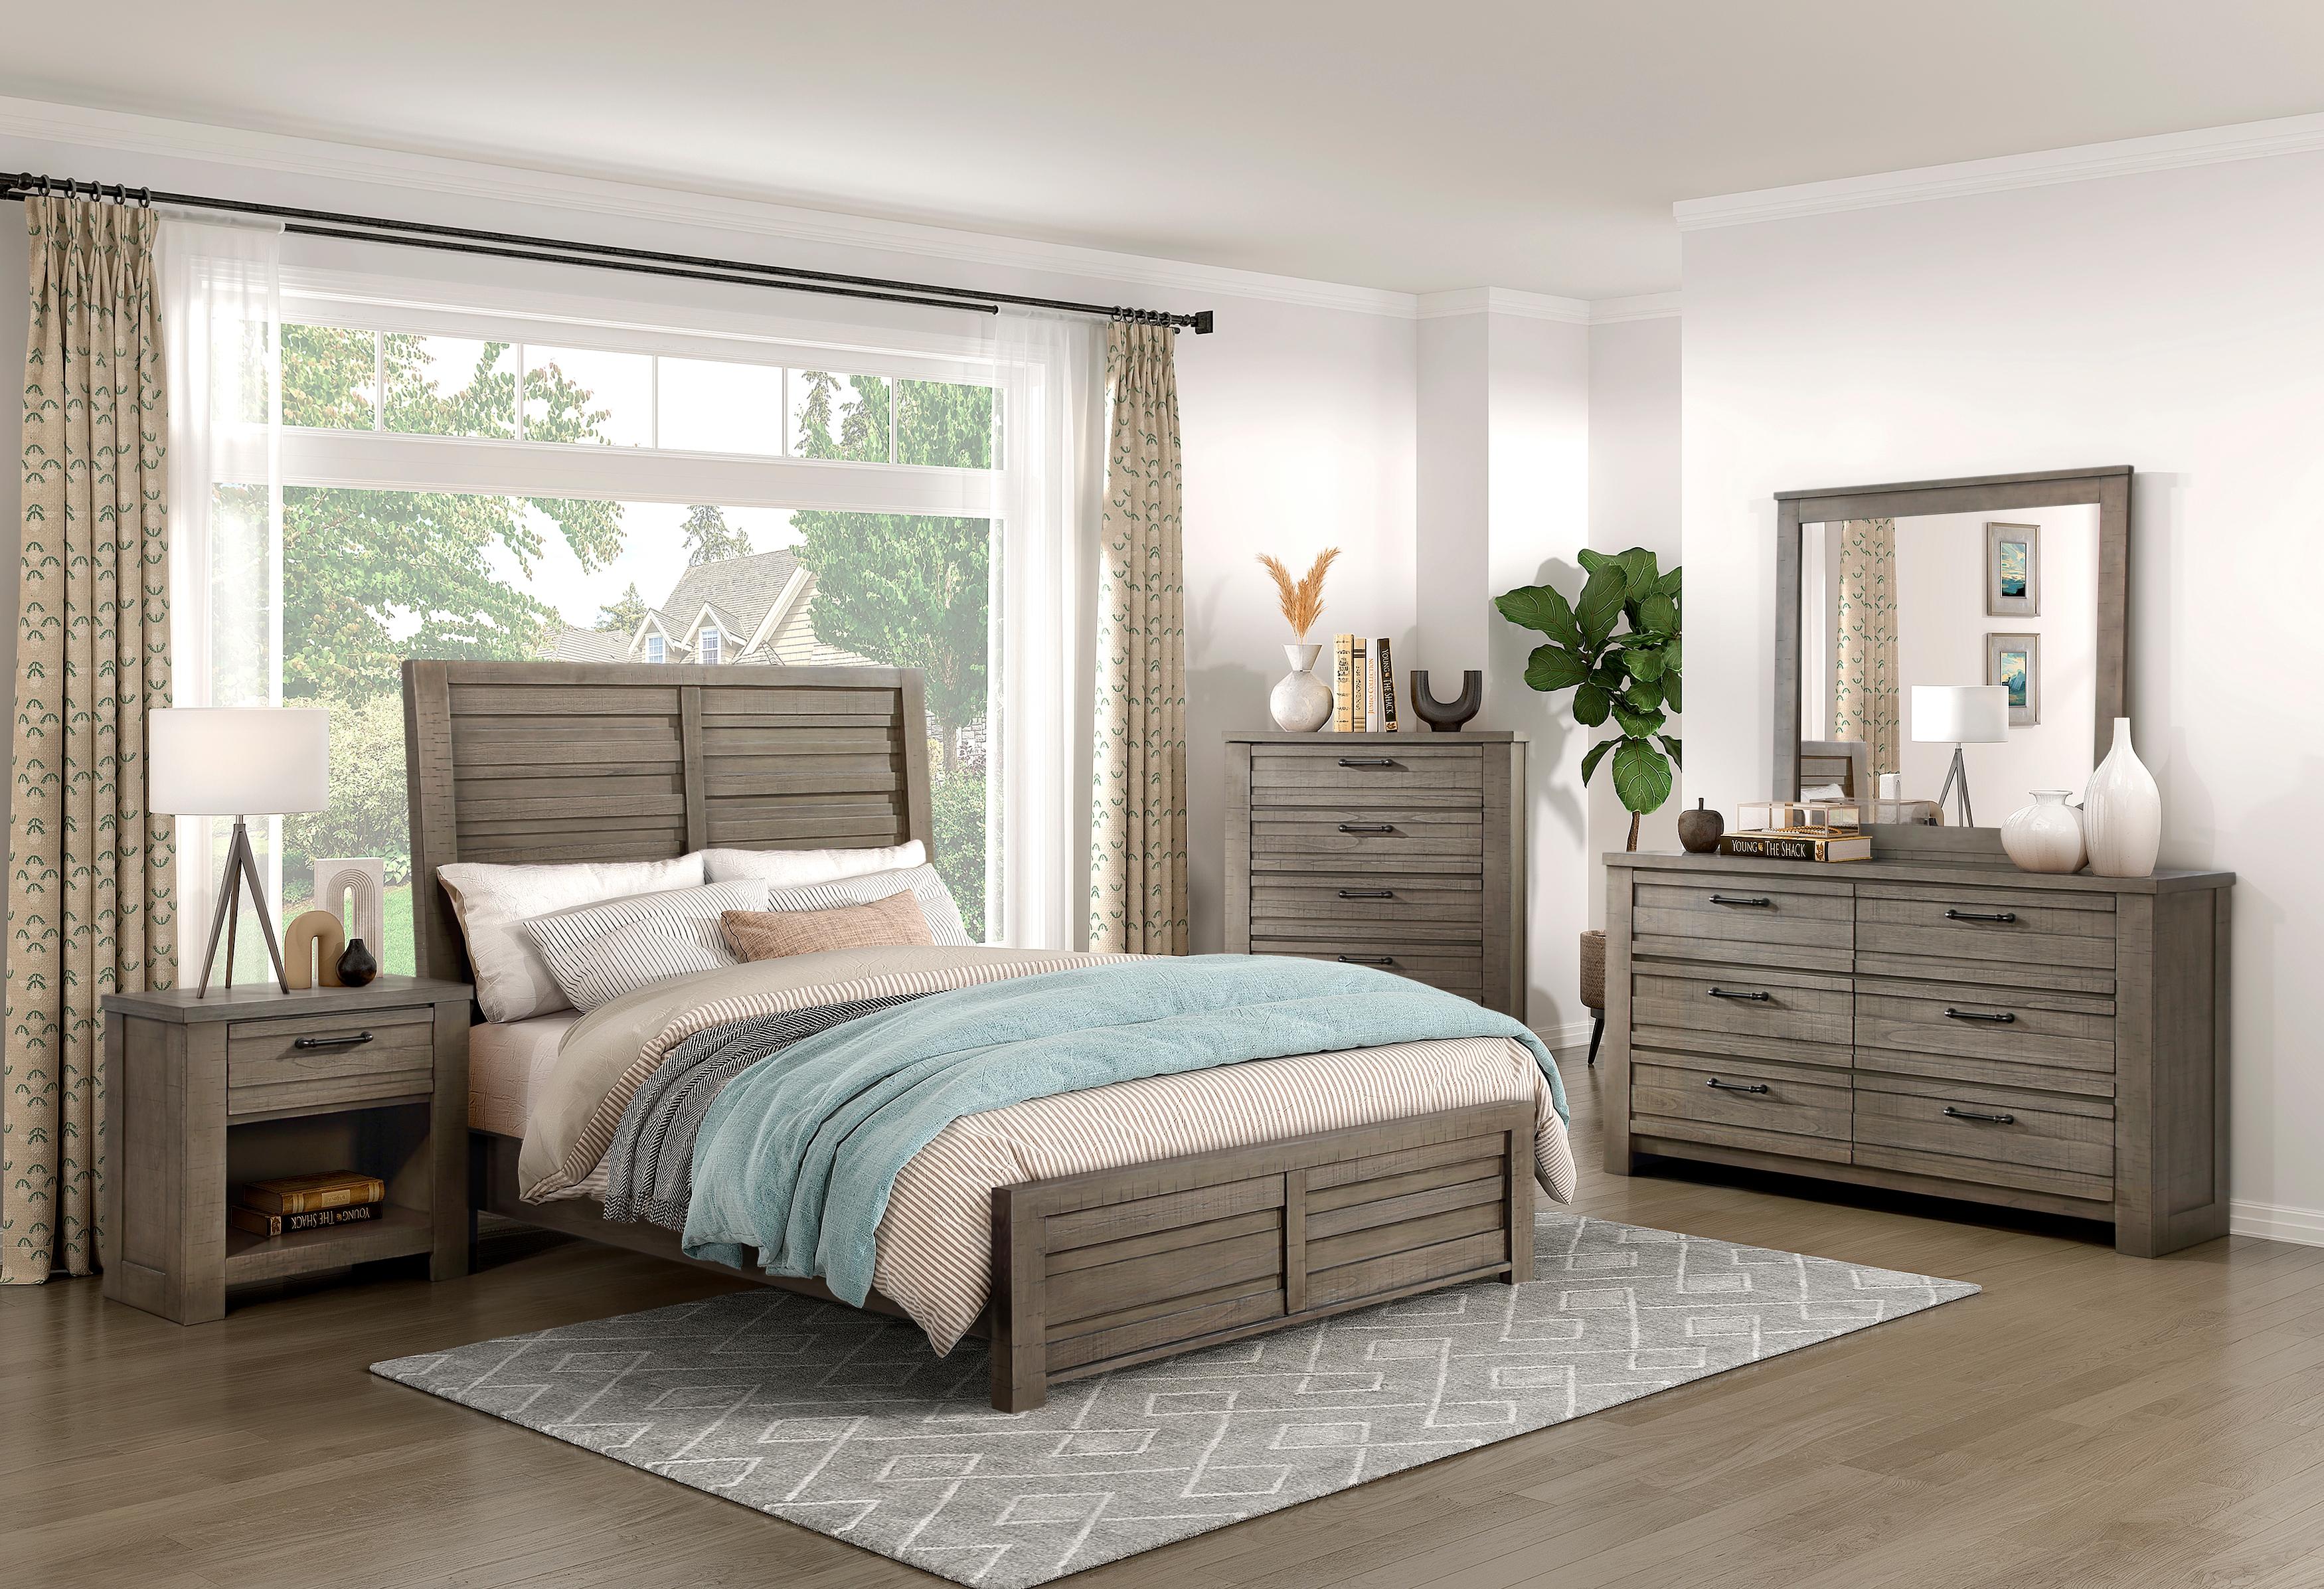 

    
Rustic Gray Wood Queen Panel Bedroom Set 3PCS Homelegance Longview 1498GY-1-Q-3PCS
